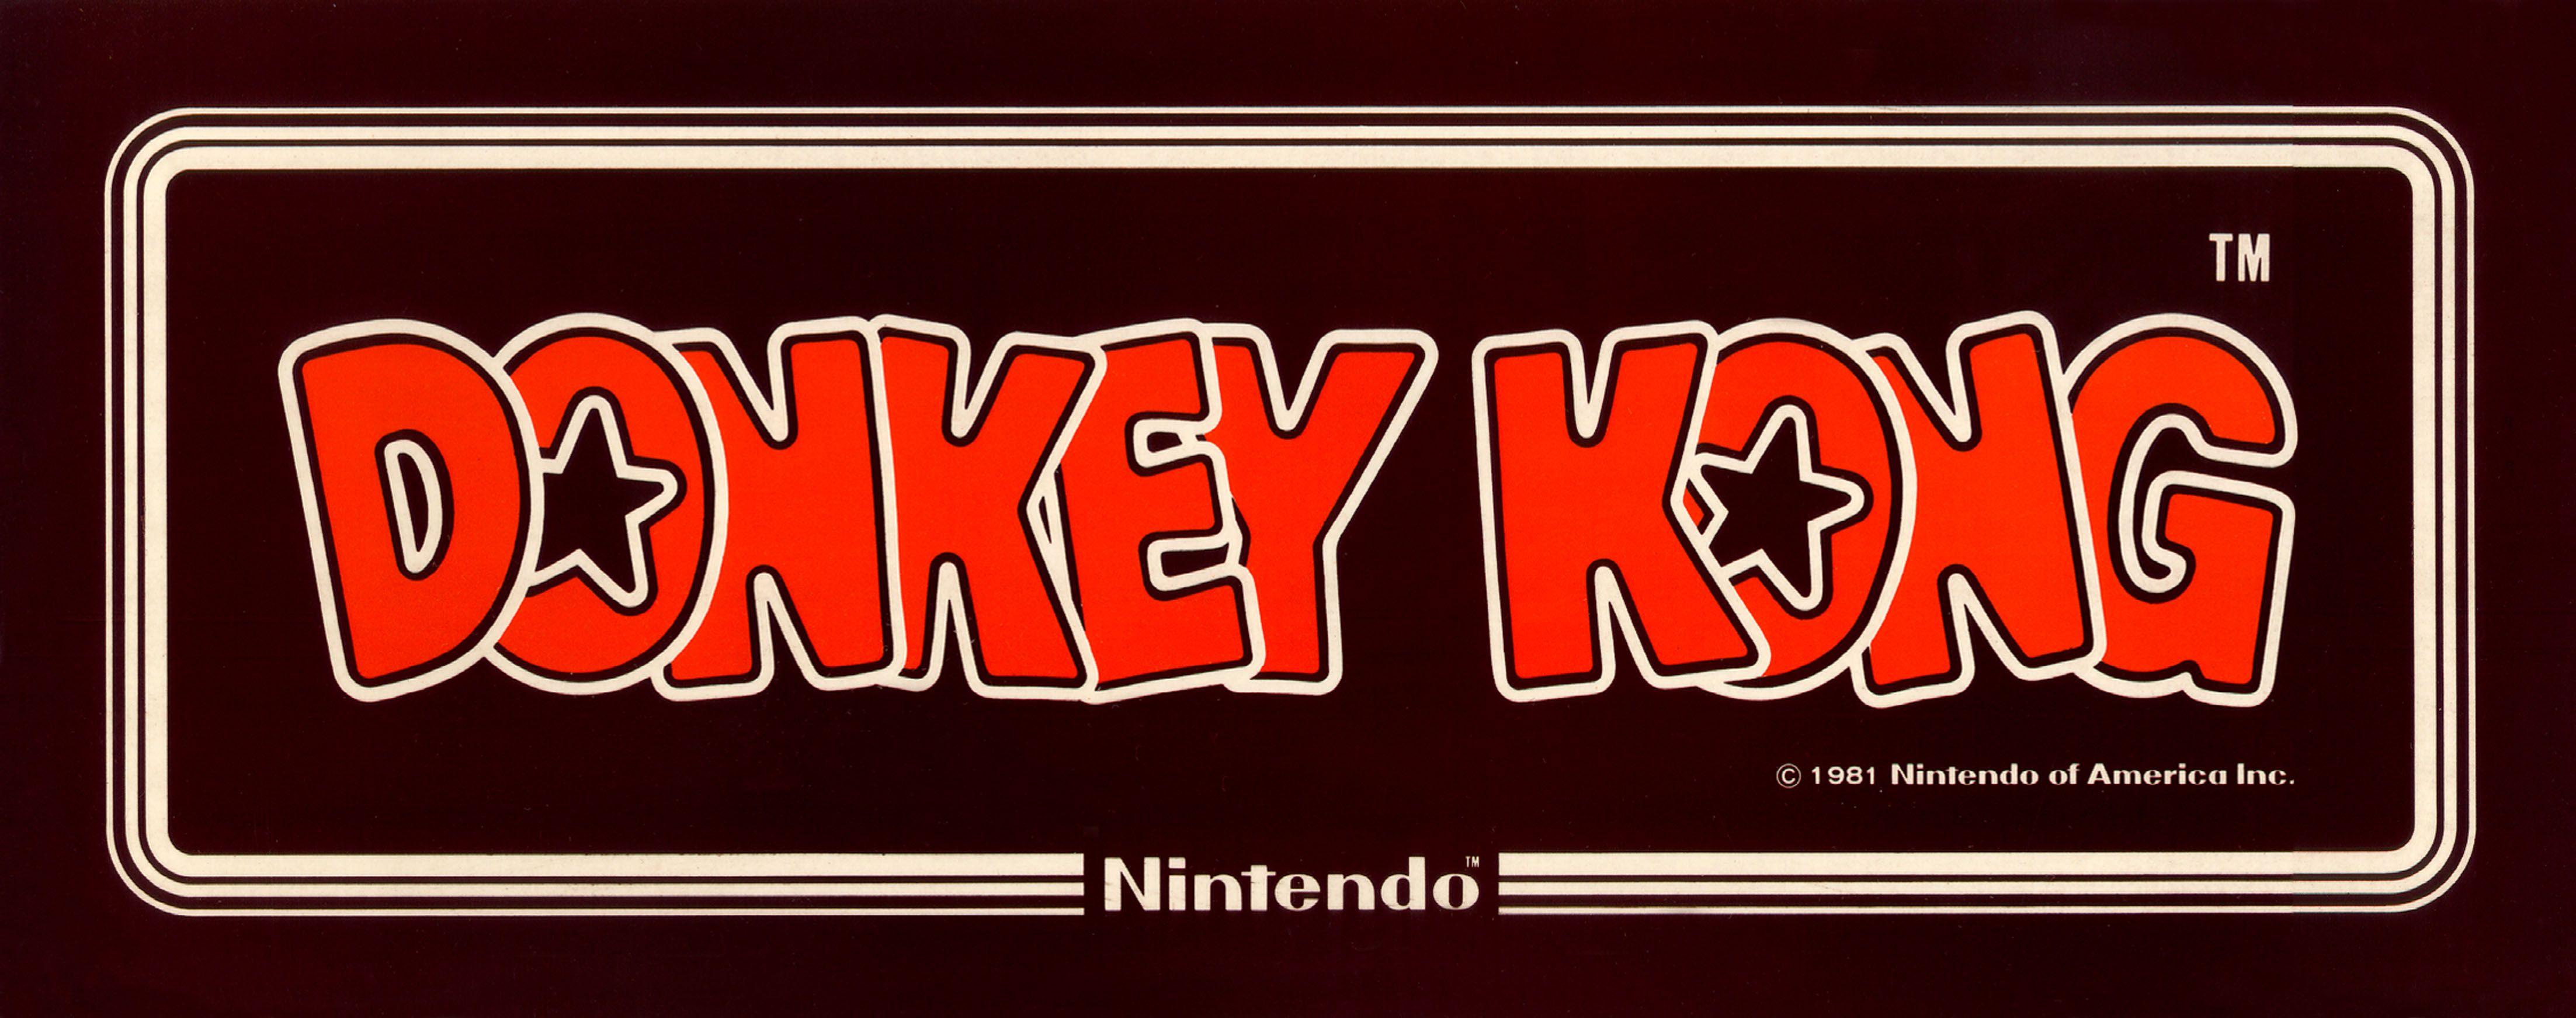 Donkey Kong Logo - Index Of Arcade By Title Donkey Kong